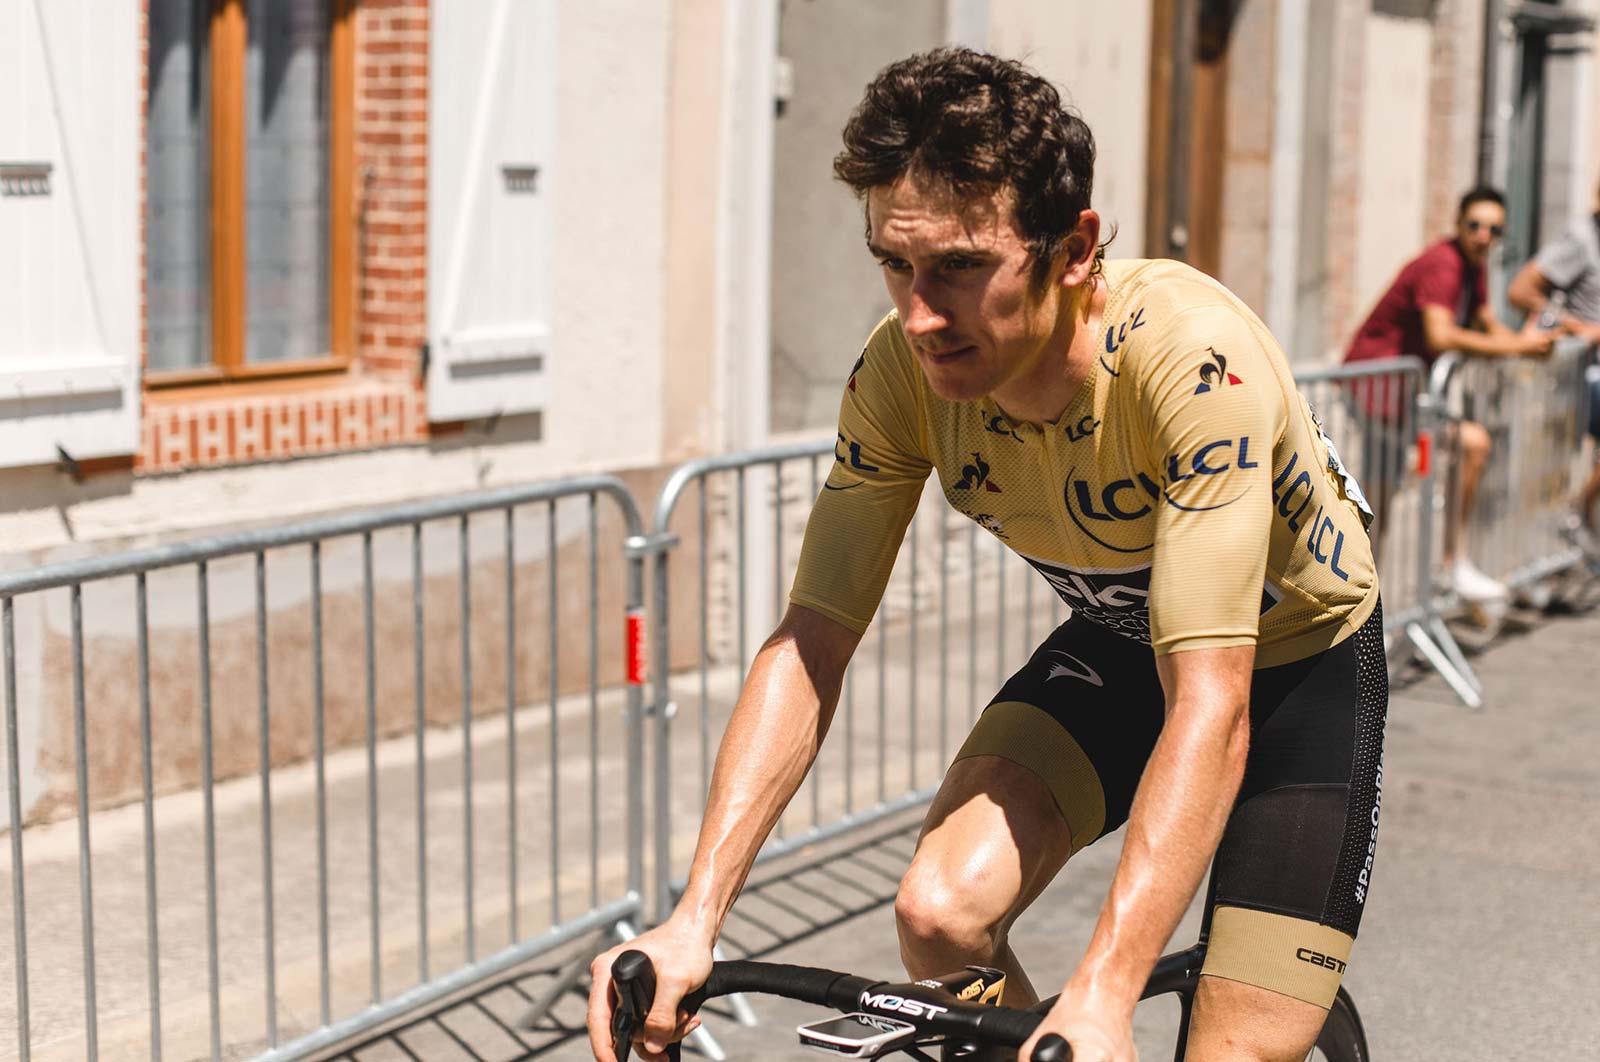 2019 Tour de France - Geraint Thomas